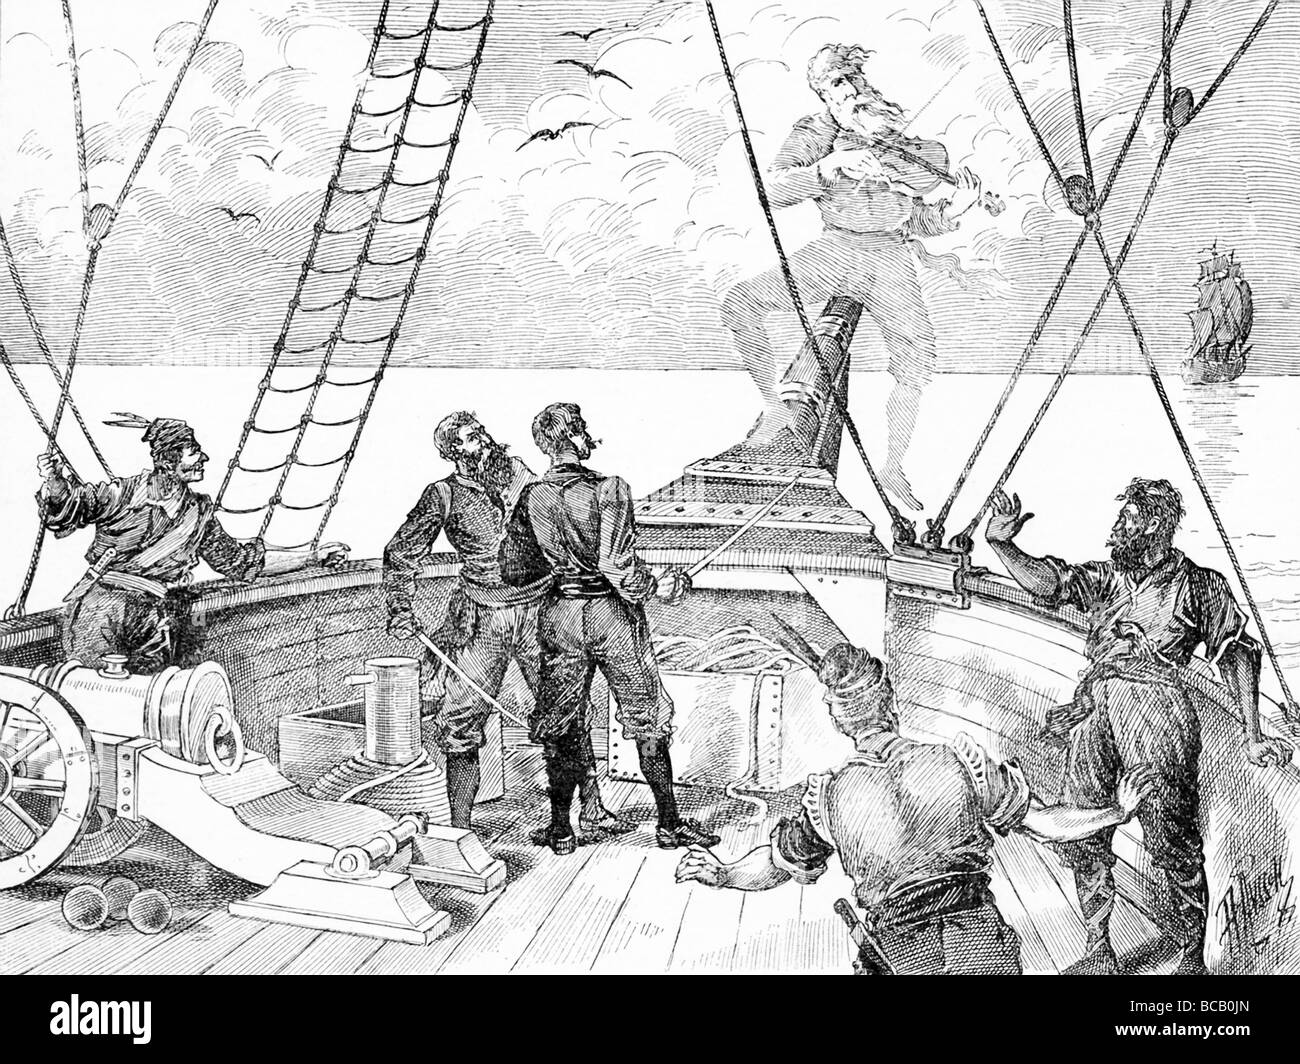 Ein geisterhaftes Fiedler spielt auf dem Bug eines Schiffes – in der Seemann-Lore, eine unheilvolle Vorahnung des Schicksals. Stockfoto